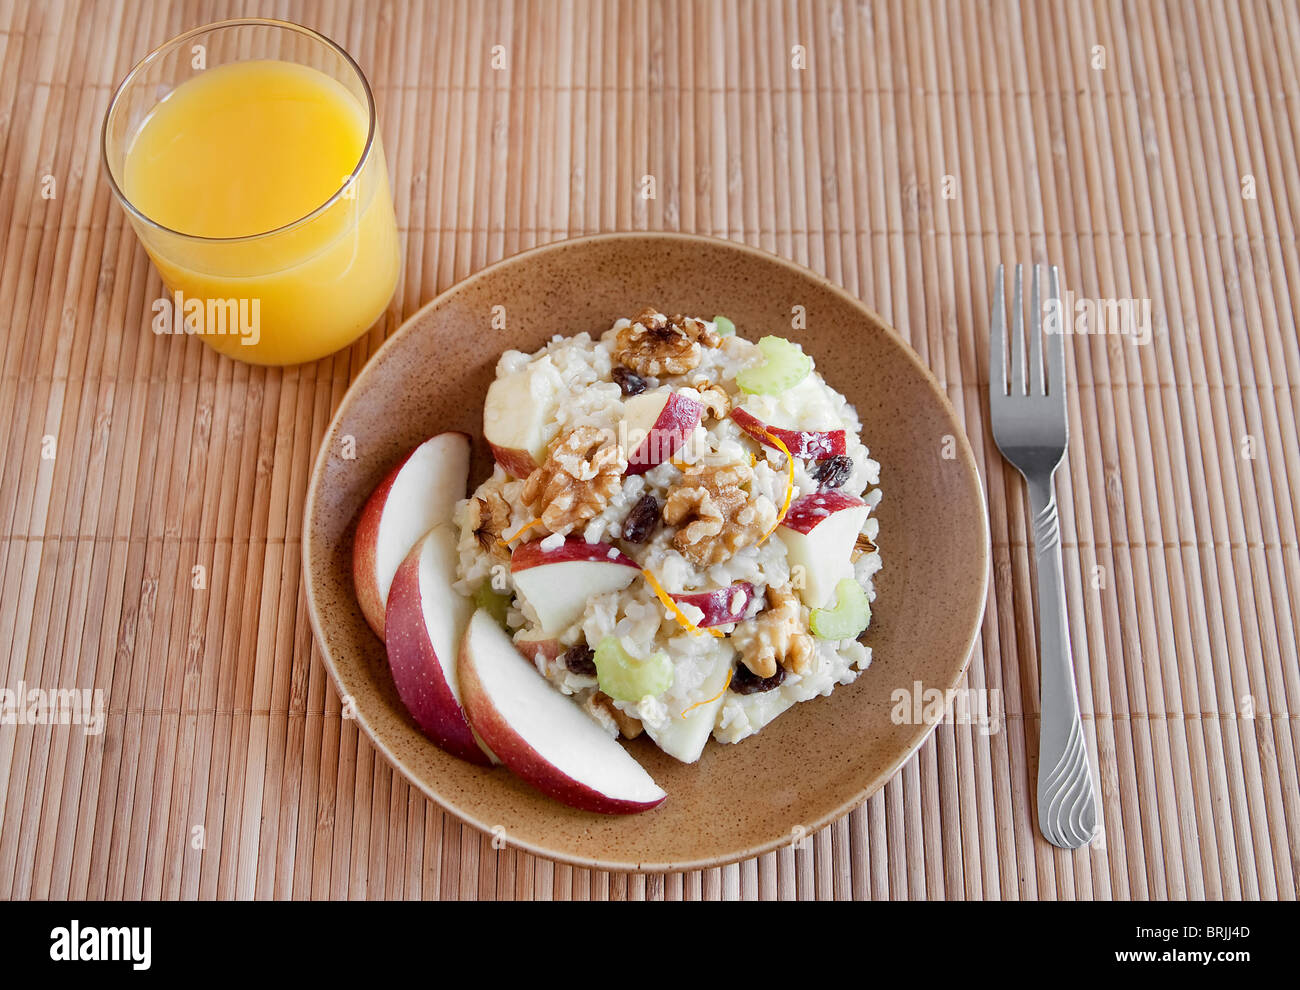 ein Teller mit Apfel Walnuss Salat ähnlich Waldorf-Salat auf einem braunen Teller mit Glas Orangensaft Stockfoto